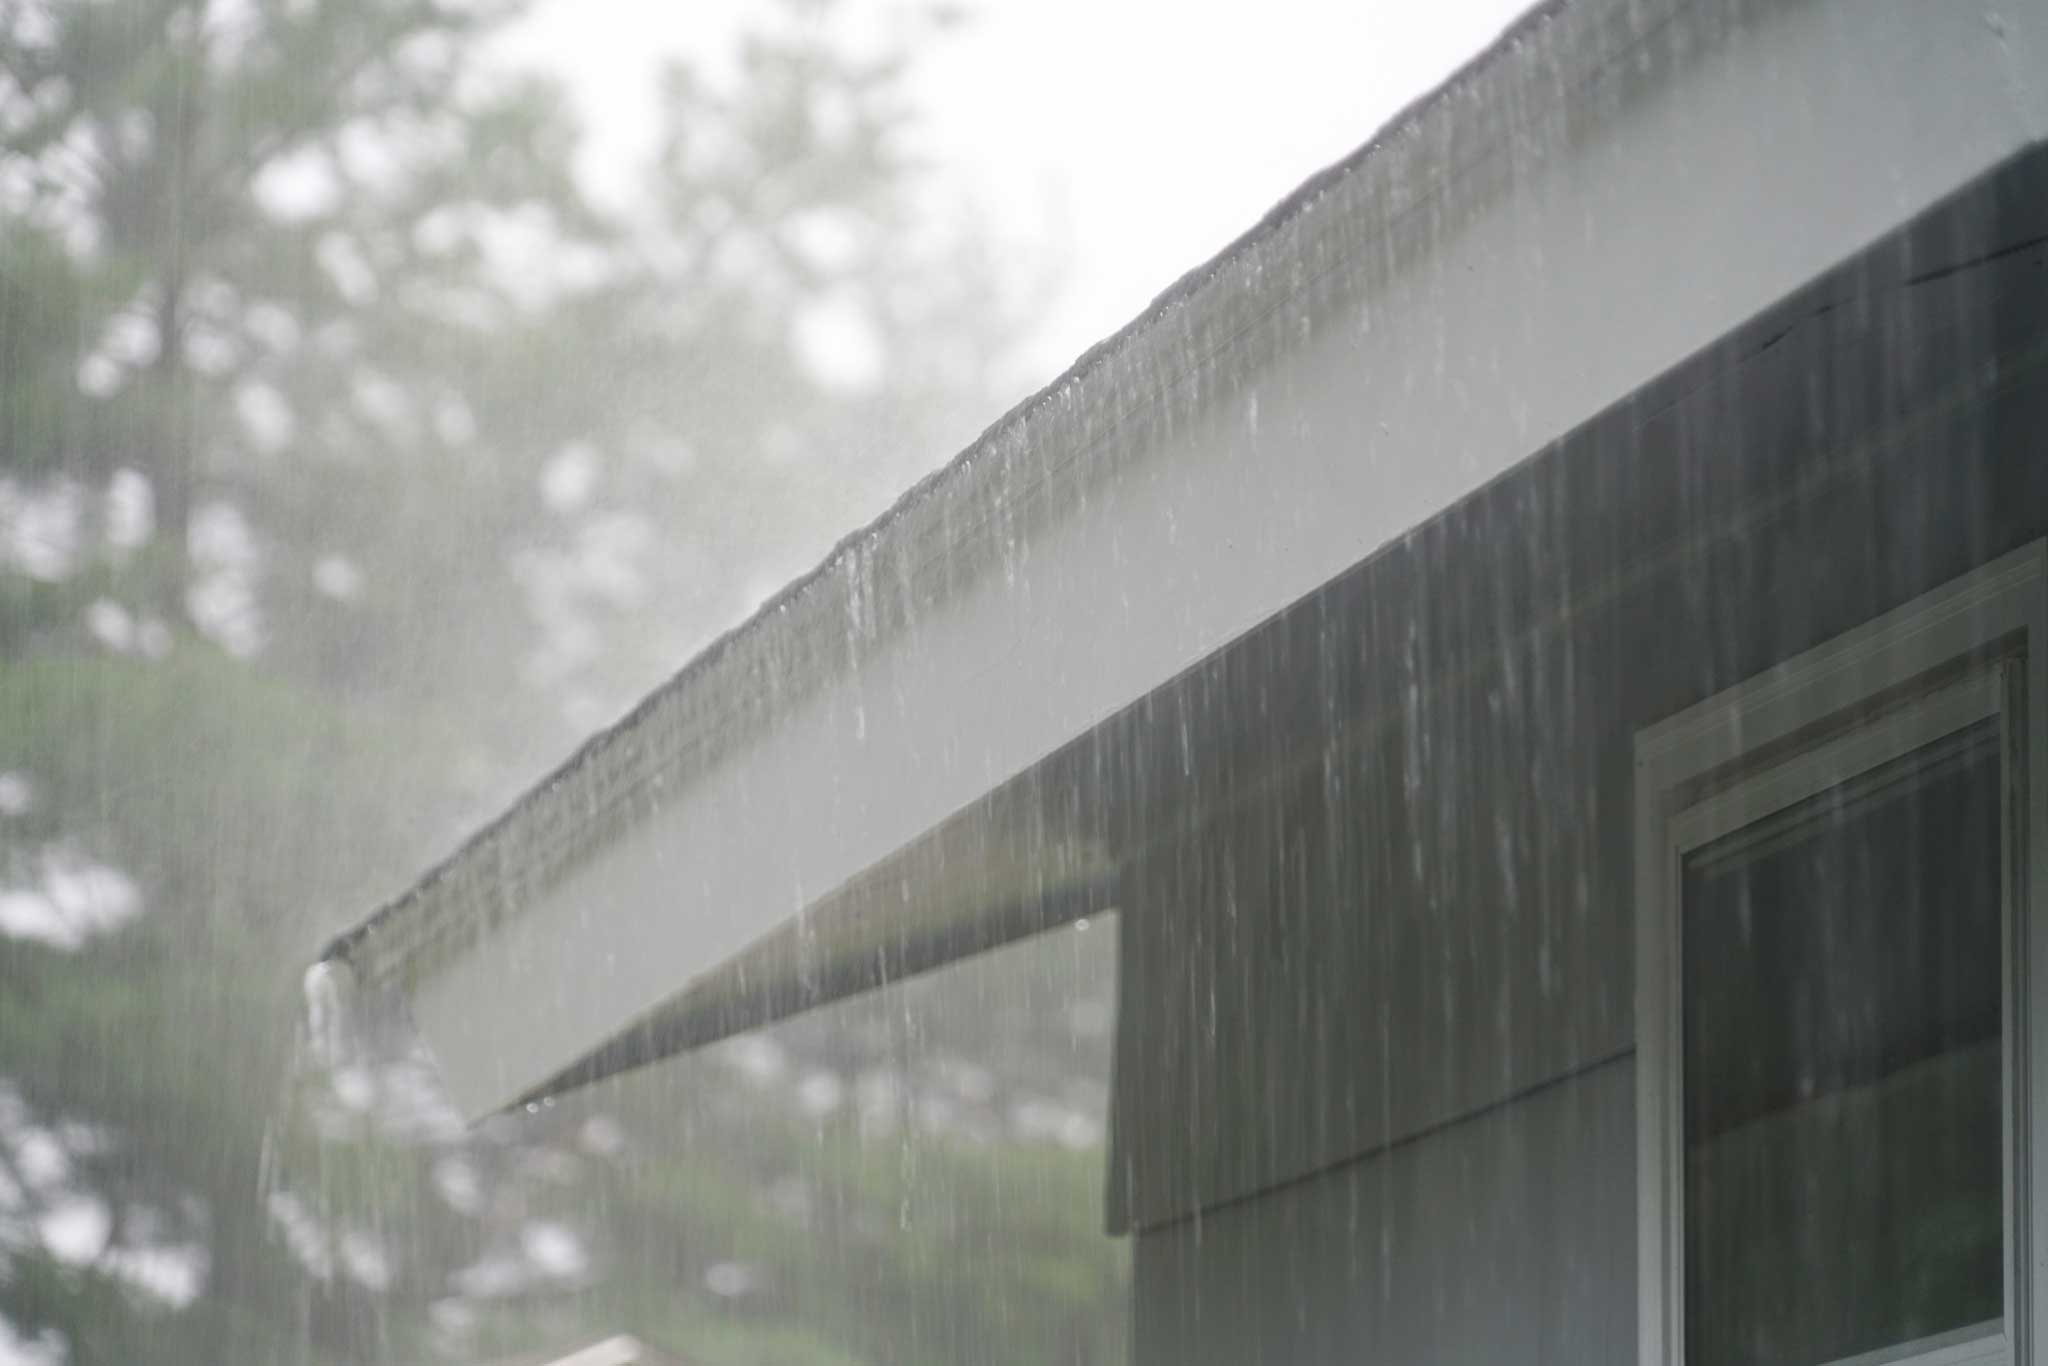 rain falling off of roof